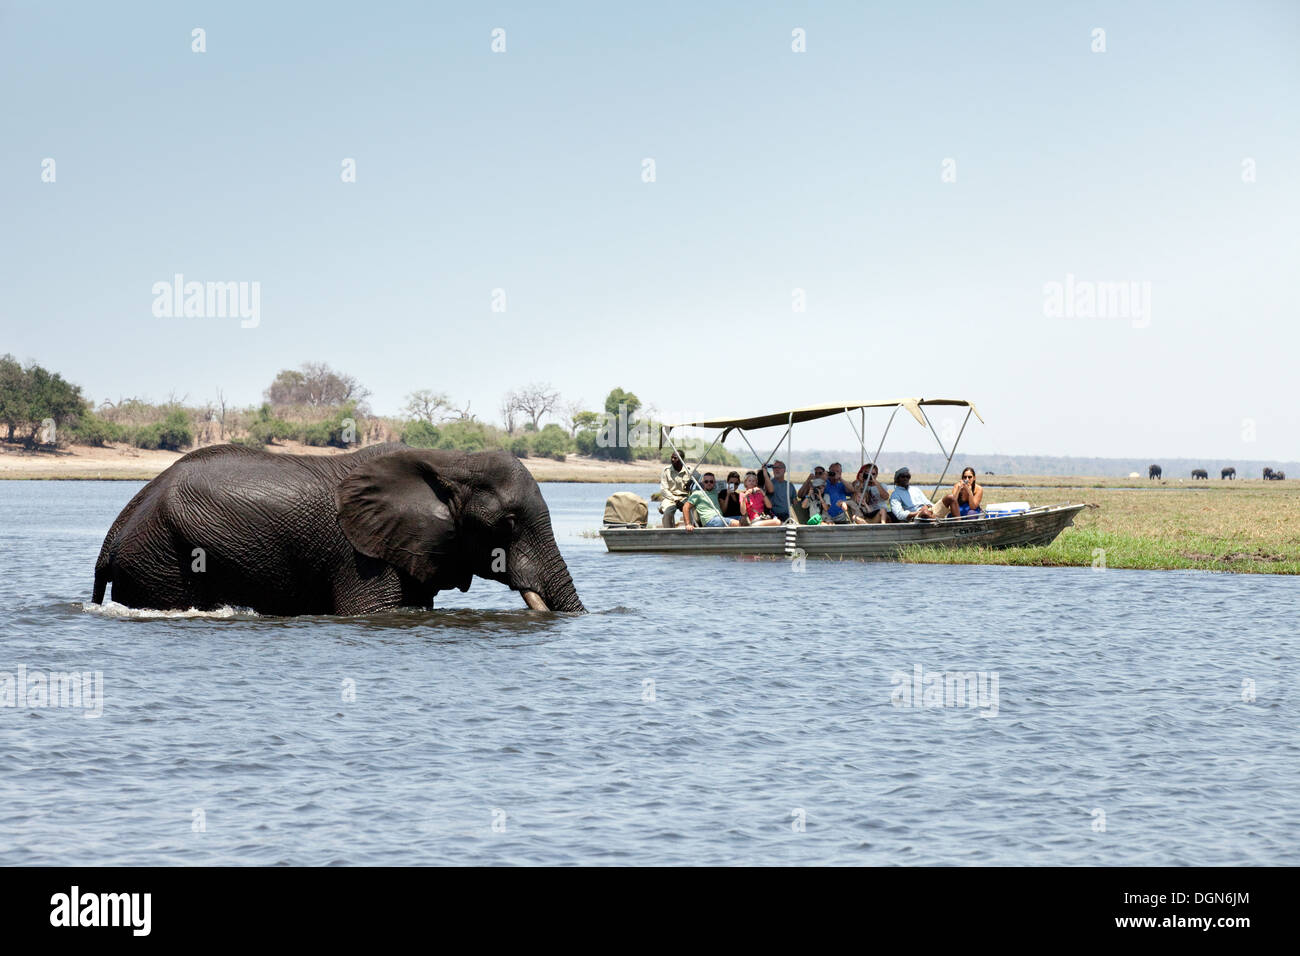 Les touristes sur une Afrique safari regarder un éléphant traversant la rivière Chobe National Park, Botswana, Africa Banque D'Images